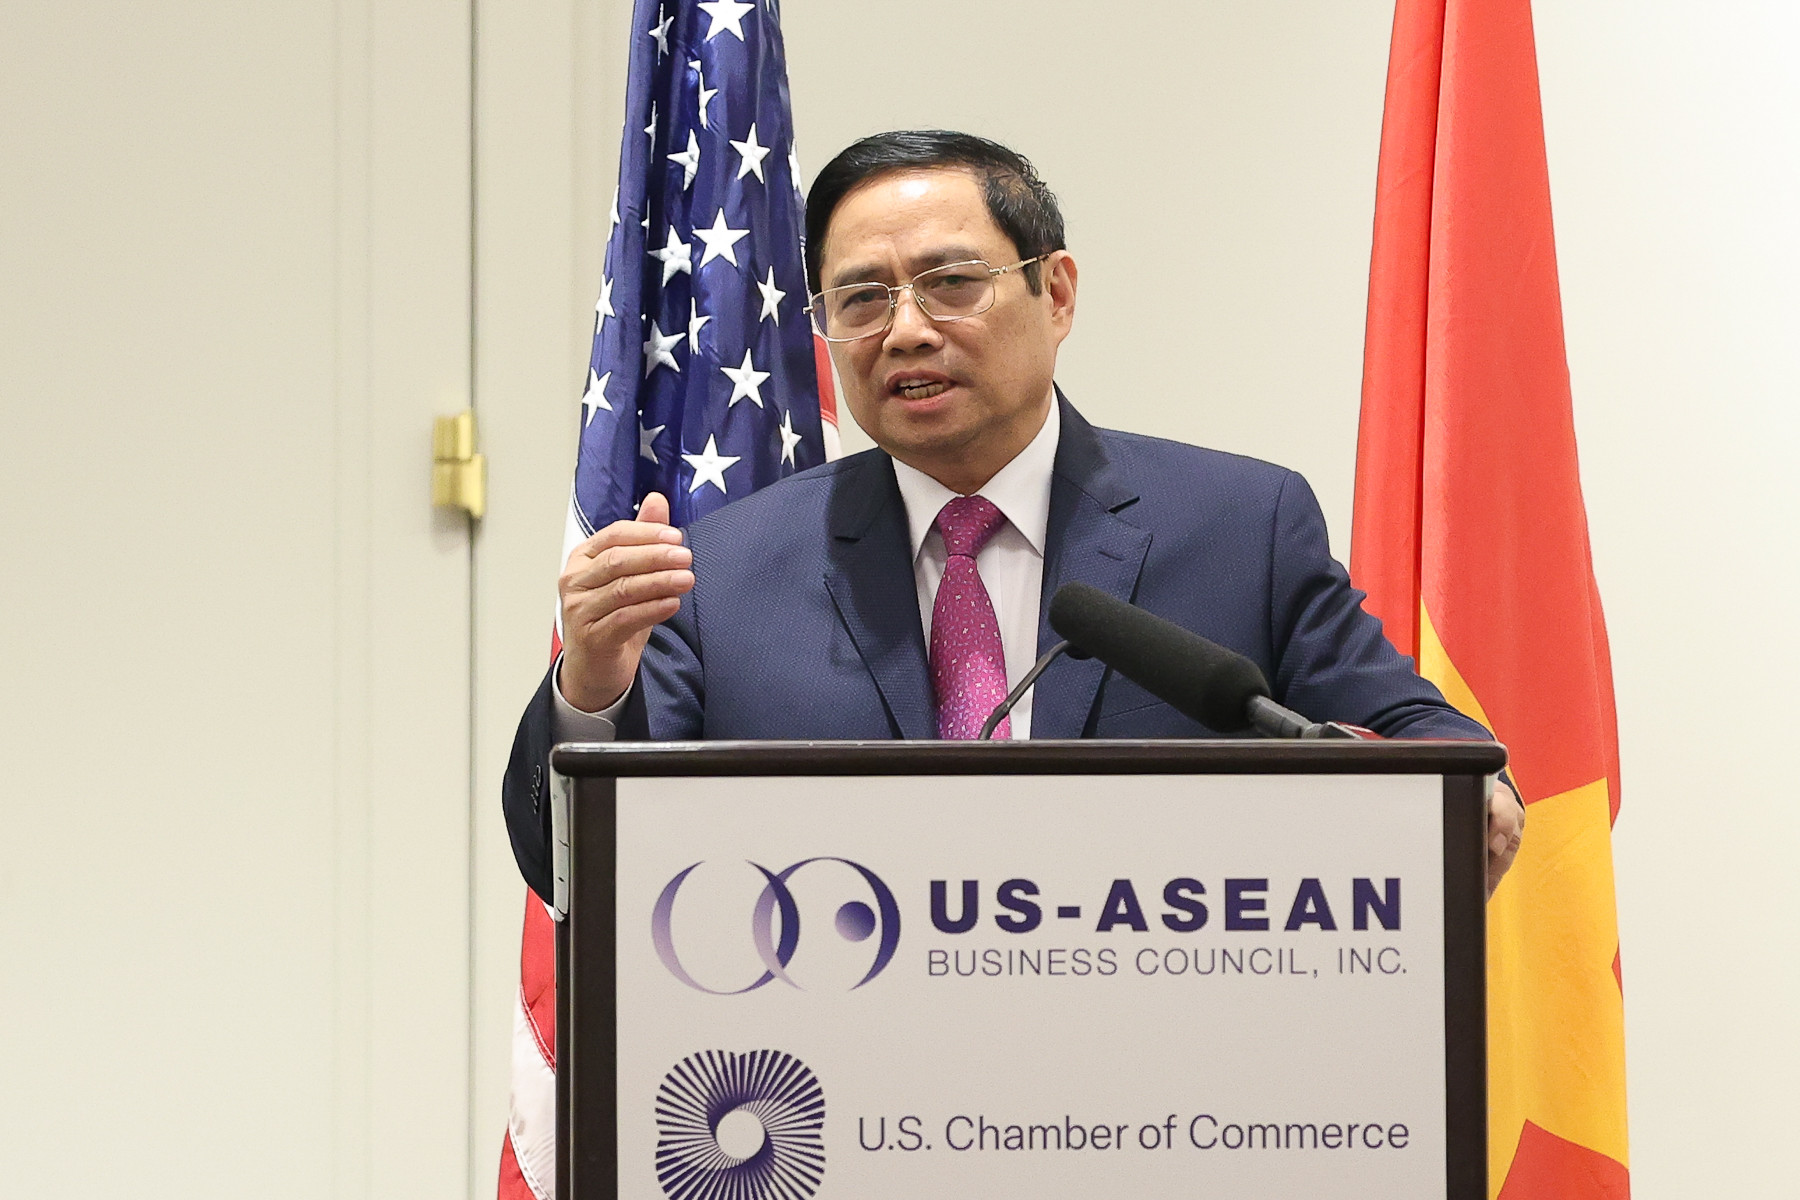 Thủ tướng: Quan hệ Việt Nam-Hoa Kỳ 'thăng trầm và đột phá' - Ảnh 1.